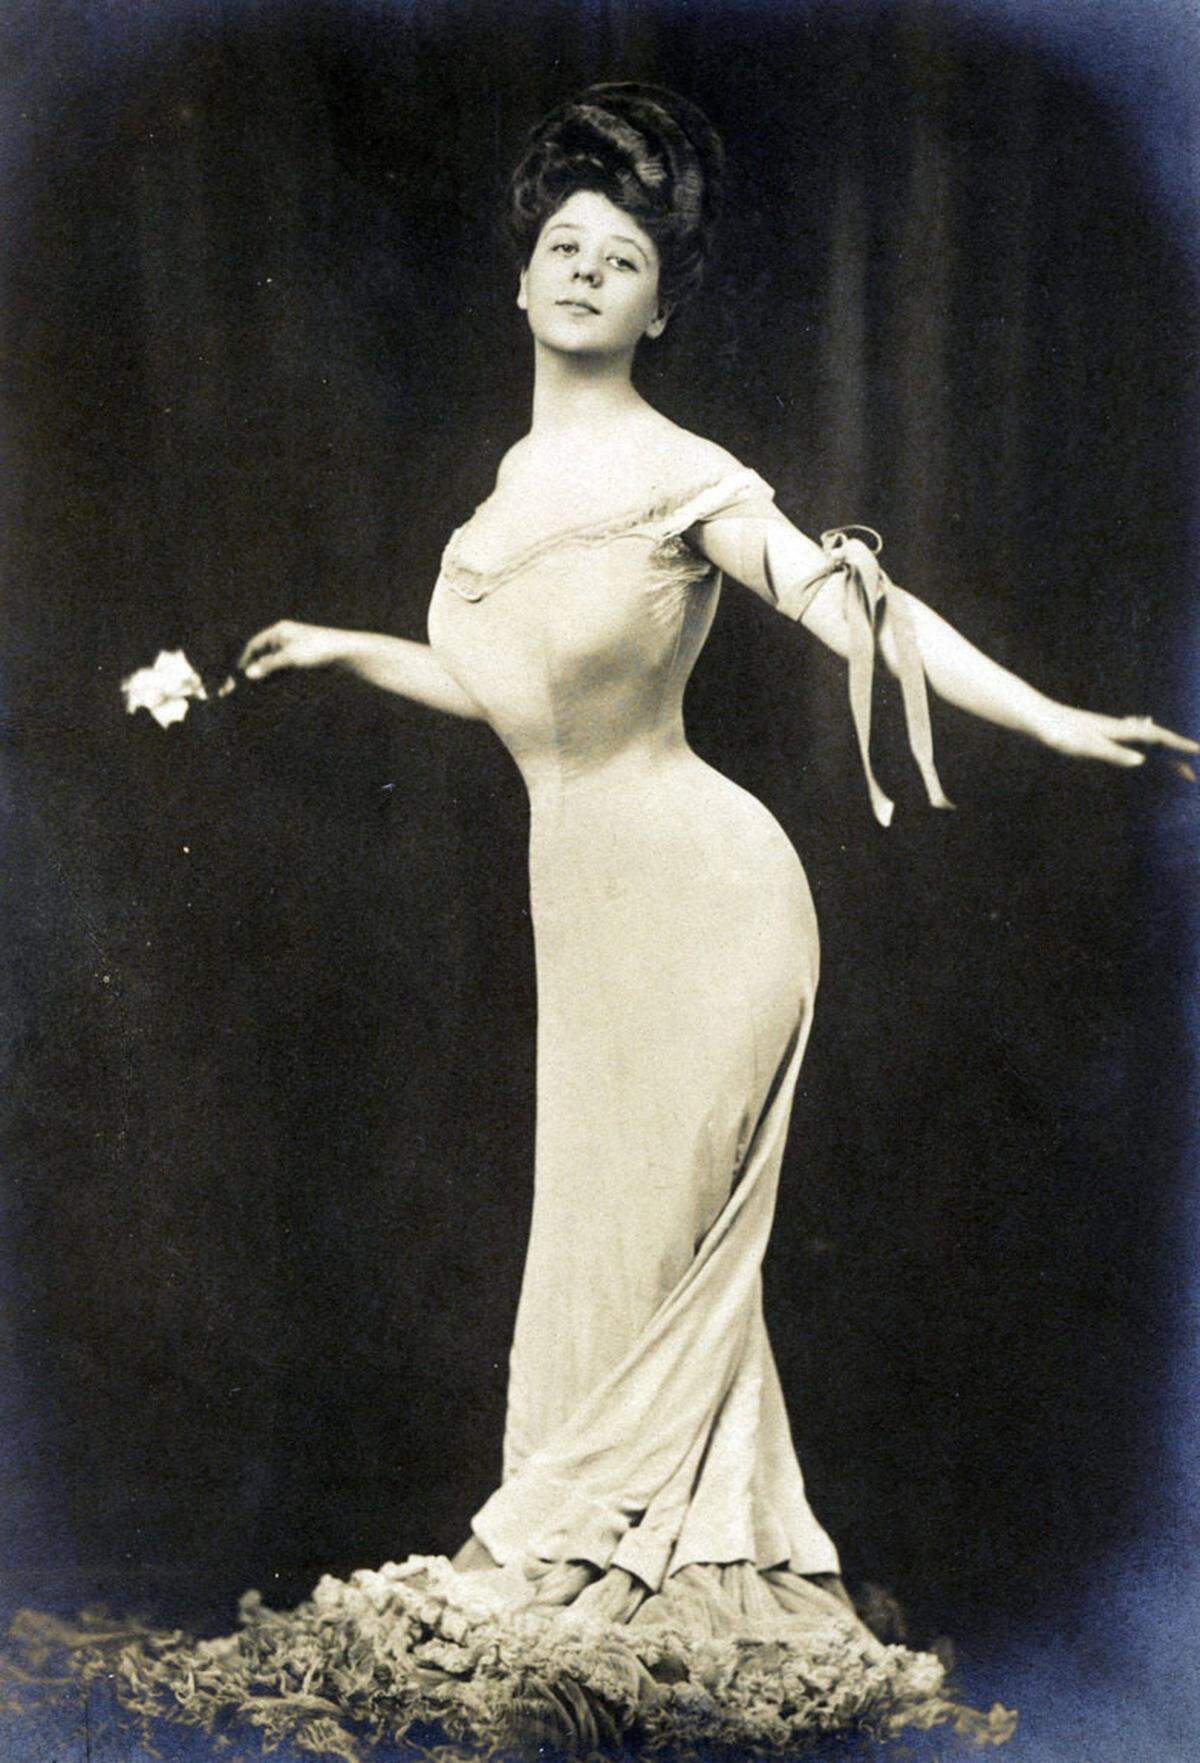 Das Gibson Girl zeichnet sich durch einen runden, weichen Körper aus, der durch ein Korsett in Form gebracht wird. Die belgische Schauspielerin Camille Clifford konnte mit diesen Attributen aufwarten.